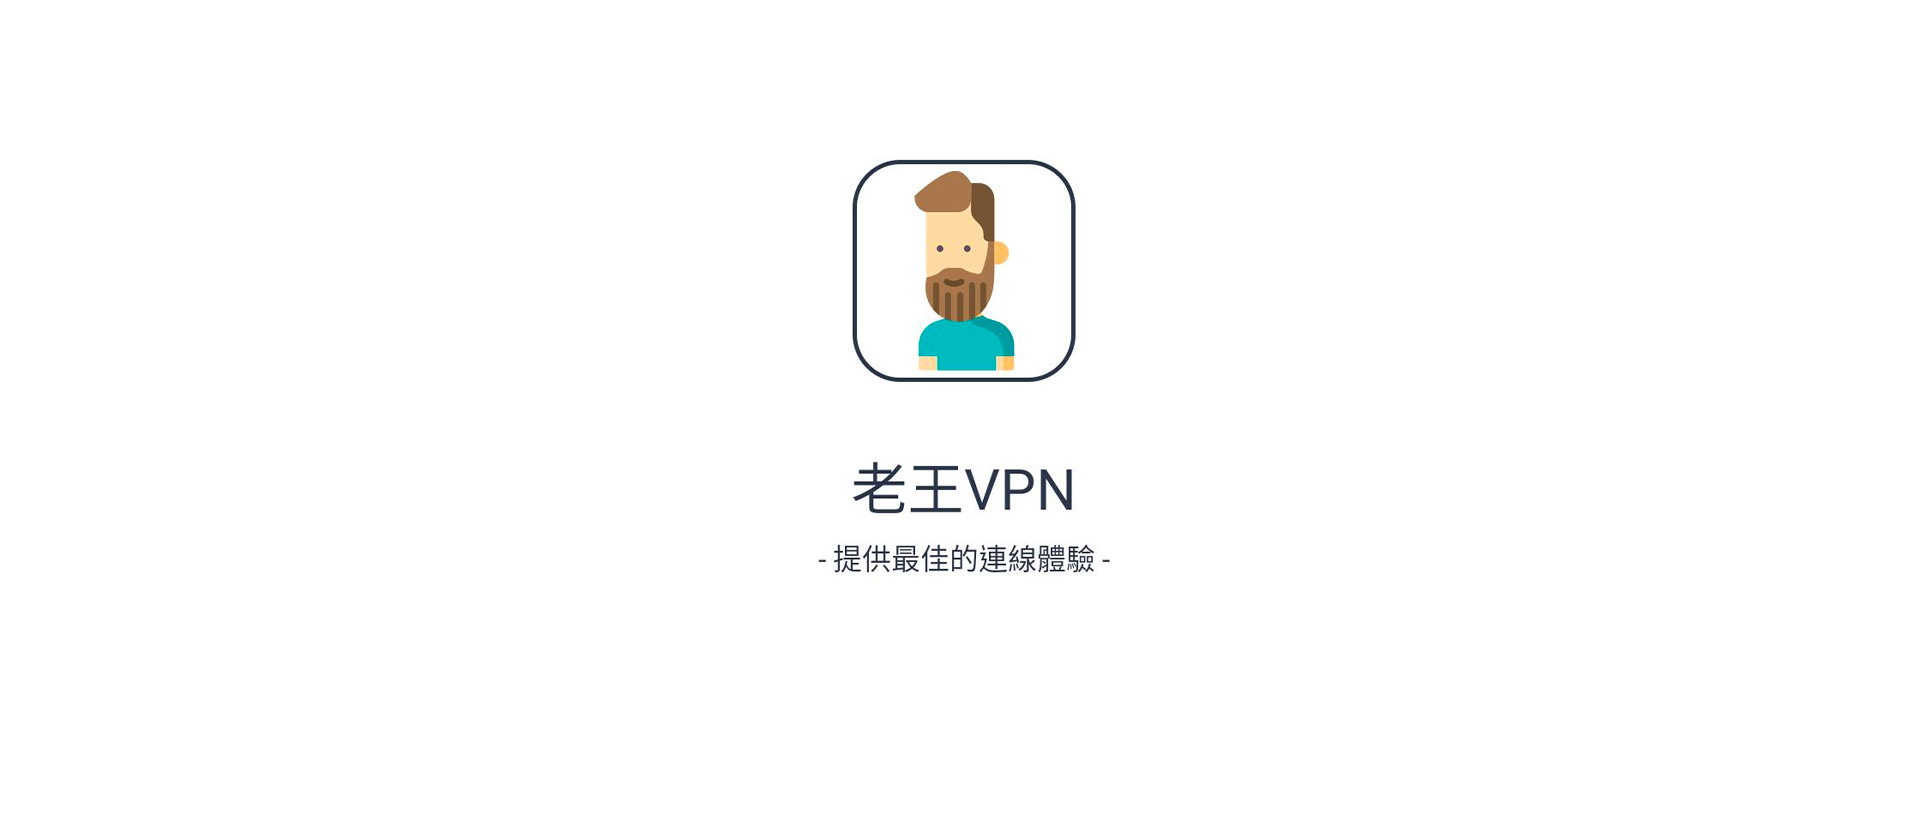 老王VPN(永久免費佛系VPN) PC電腦版下載- PC電腦玩手遊 - 夜神手機模擬器